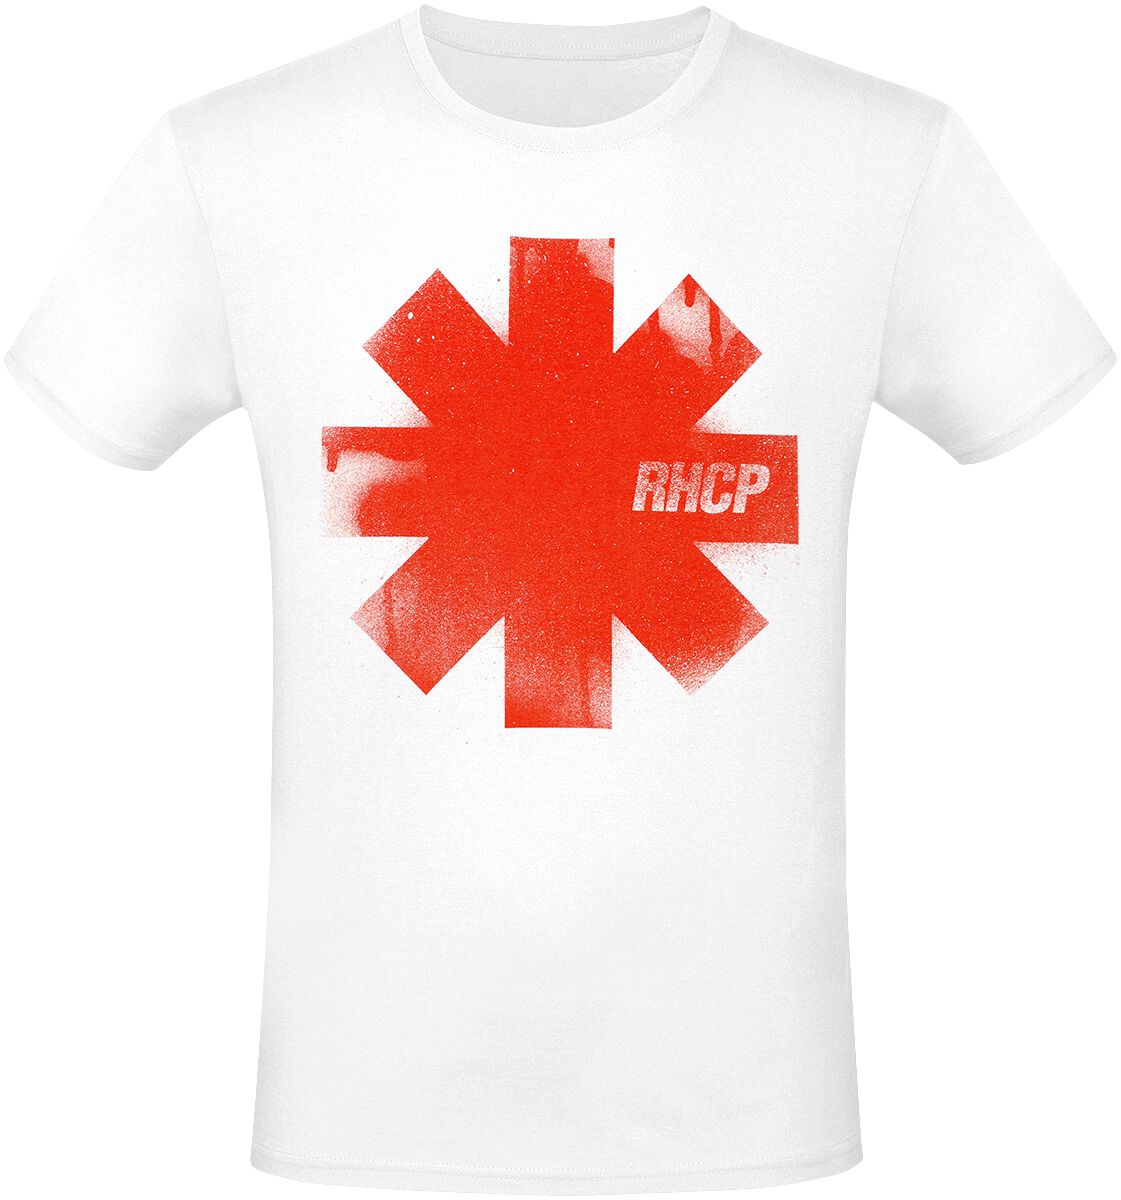 Red Hot Chili Peppers T-Shirt - Red Logo - S bis 3XL - für Männer - Größe S - weiß  - Lizenziertes Merchandise!